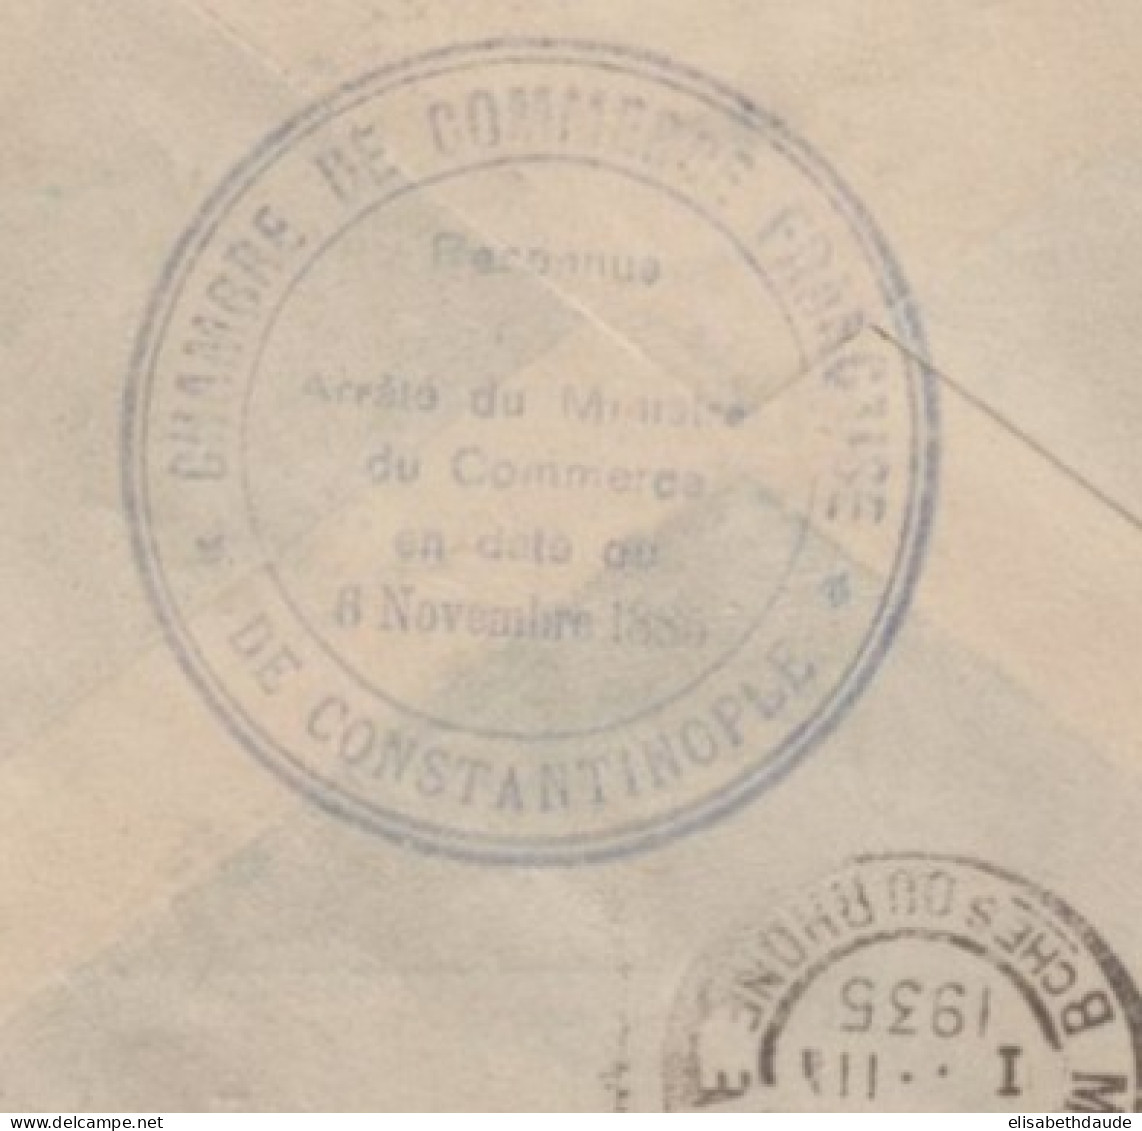 TURQUIE - 1935 - CACHET CHAMBRE DE COMMERCE FRANCAISE De CONSTANTINOPLE AU DOS ENVELOPPE => MARSEILLE - Storia Postale